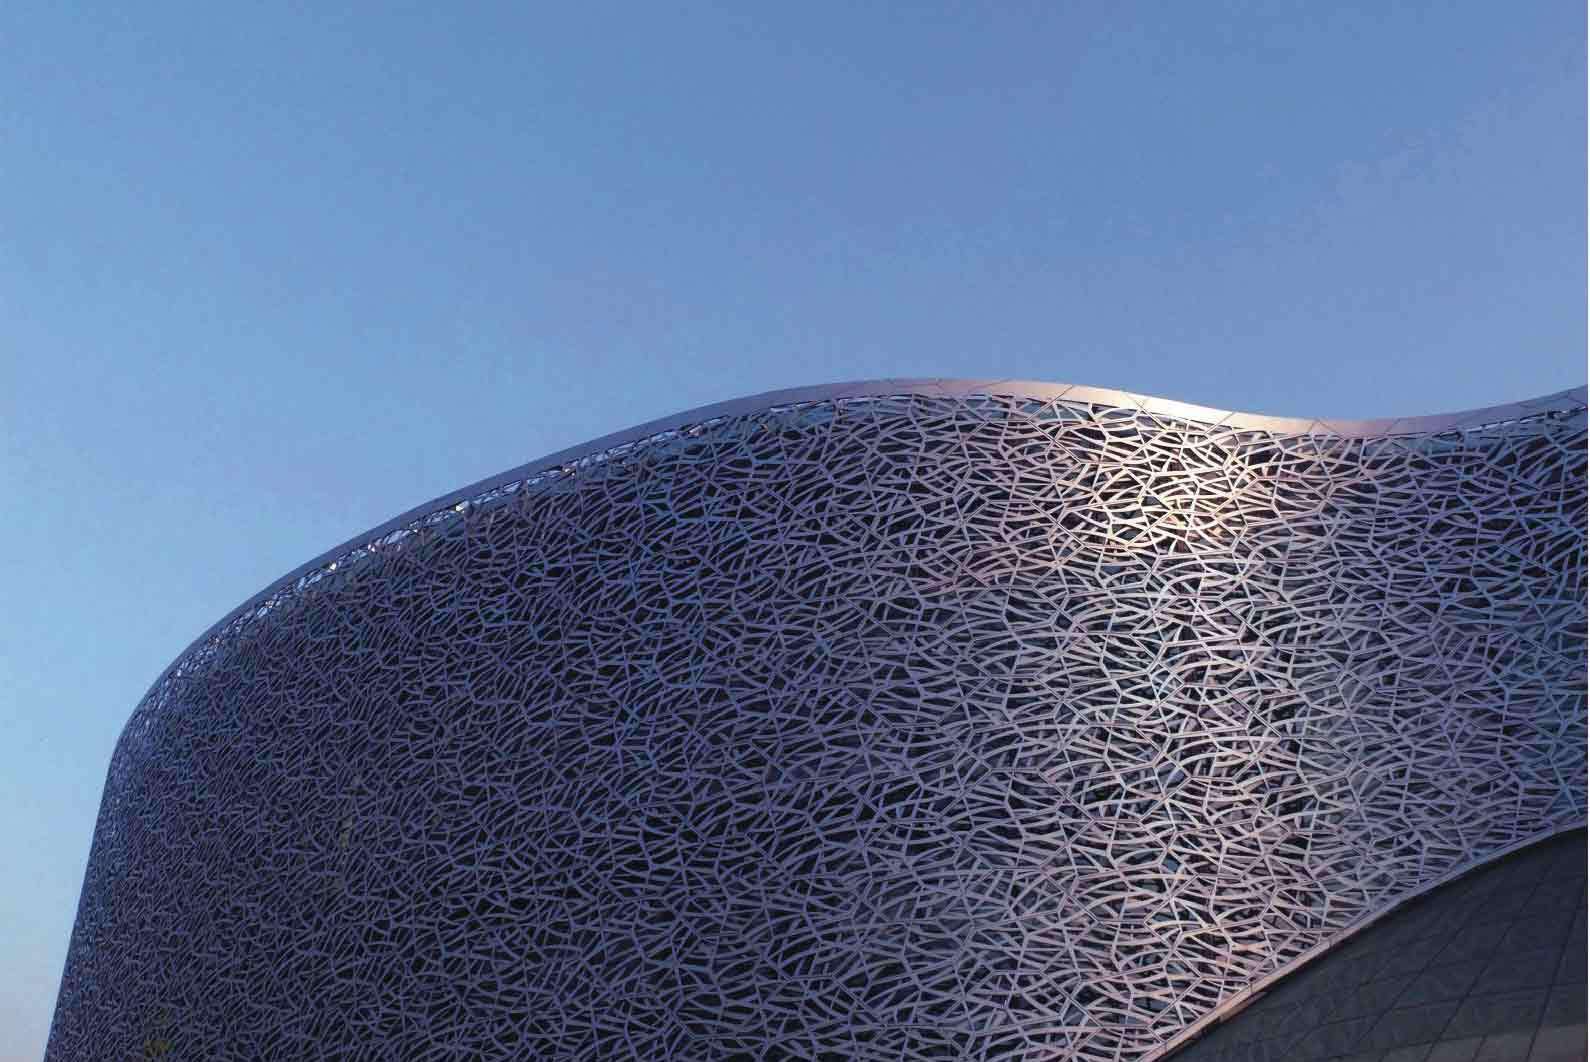 镂空铝单板为生
单层铝镁锰板屋面活彰显时尚色彩